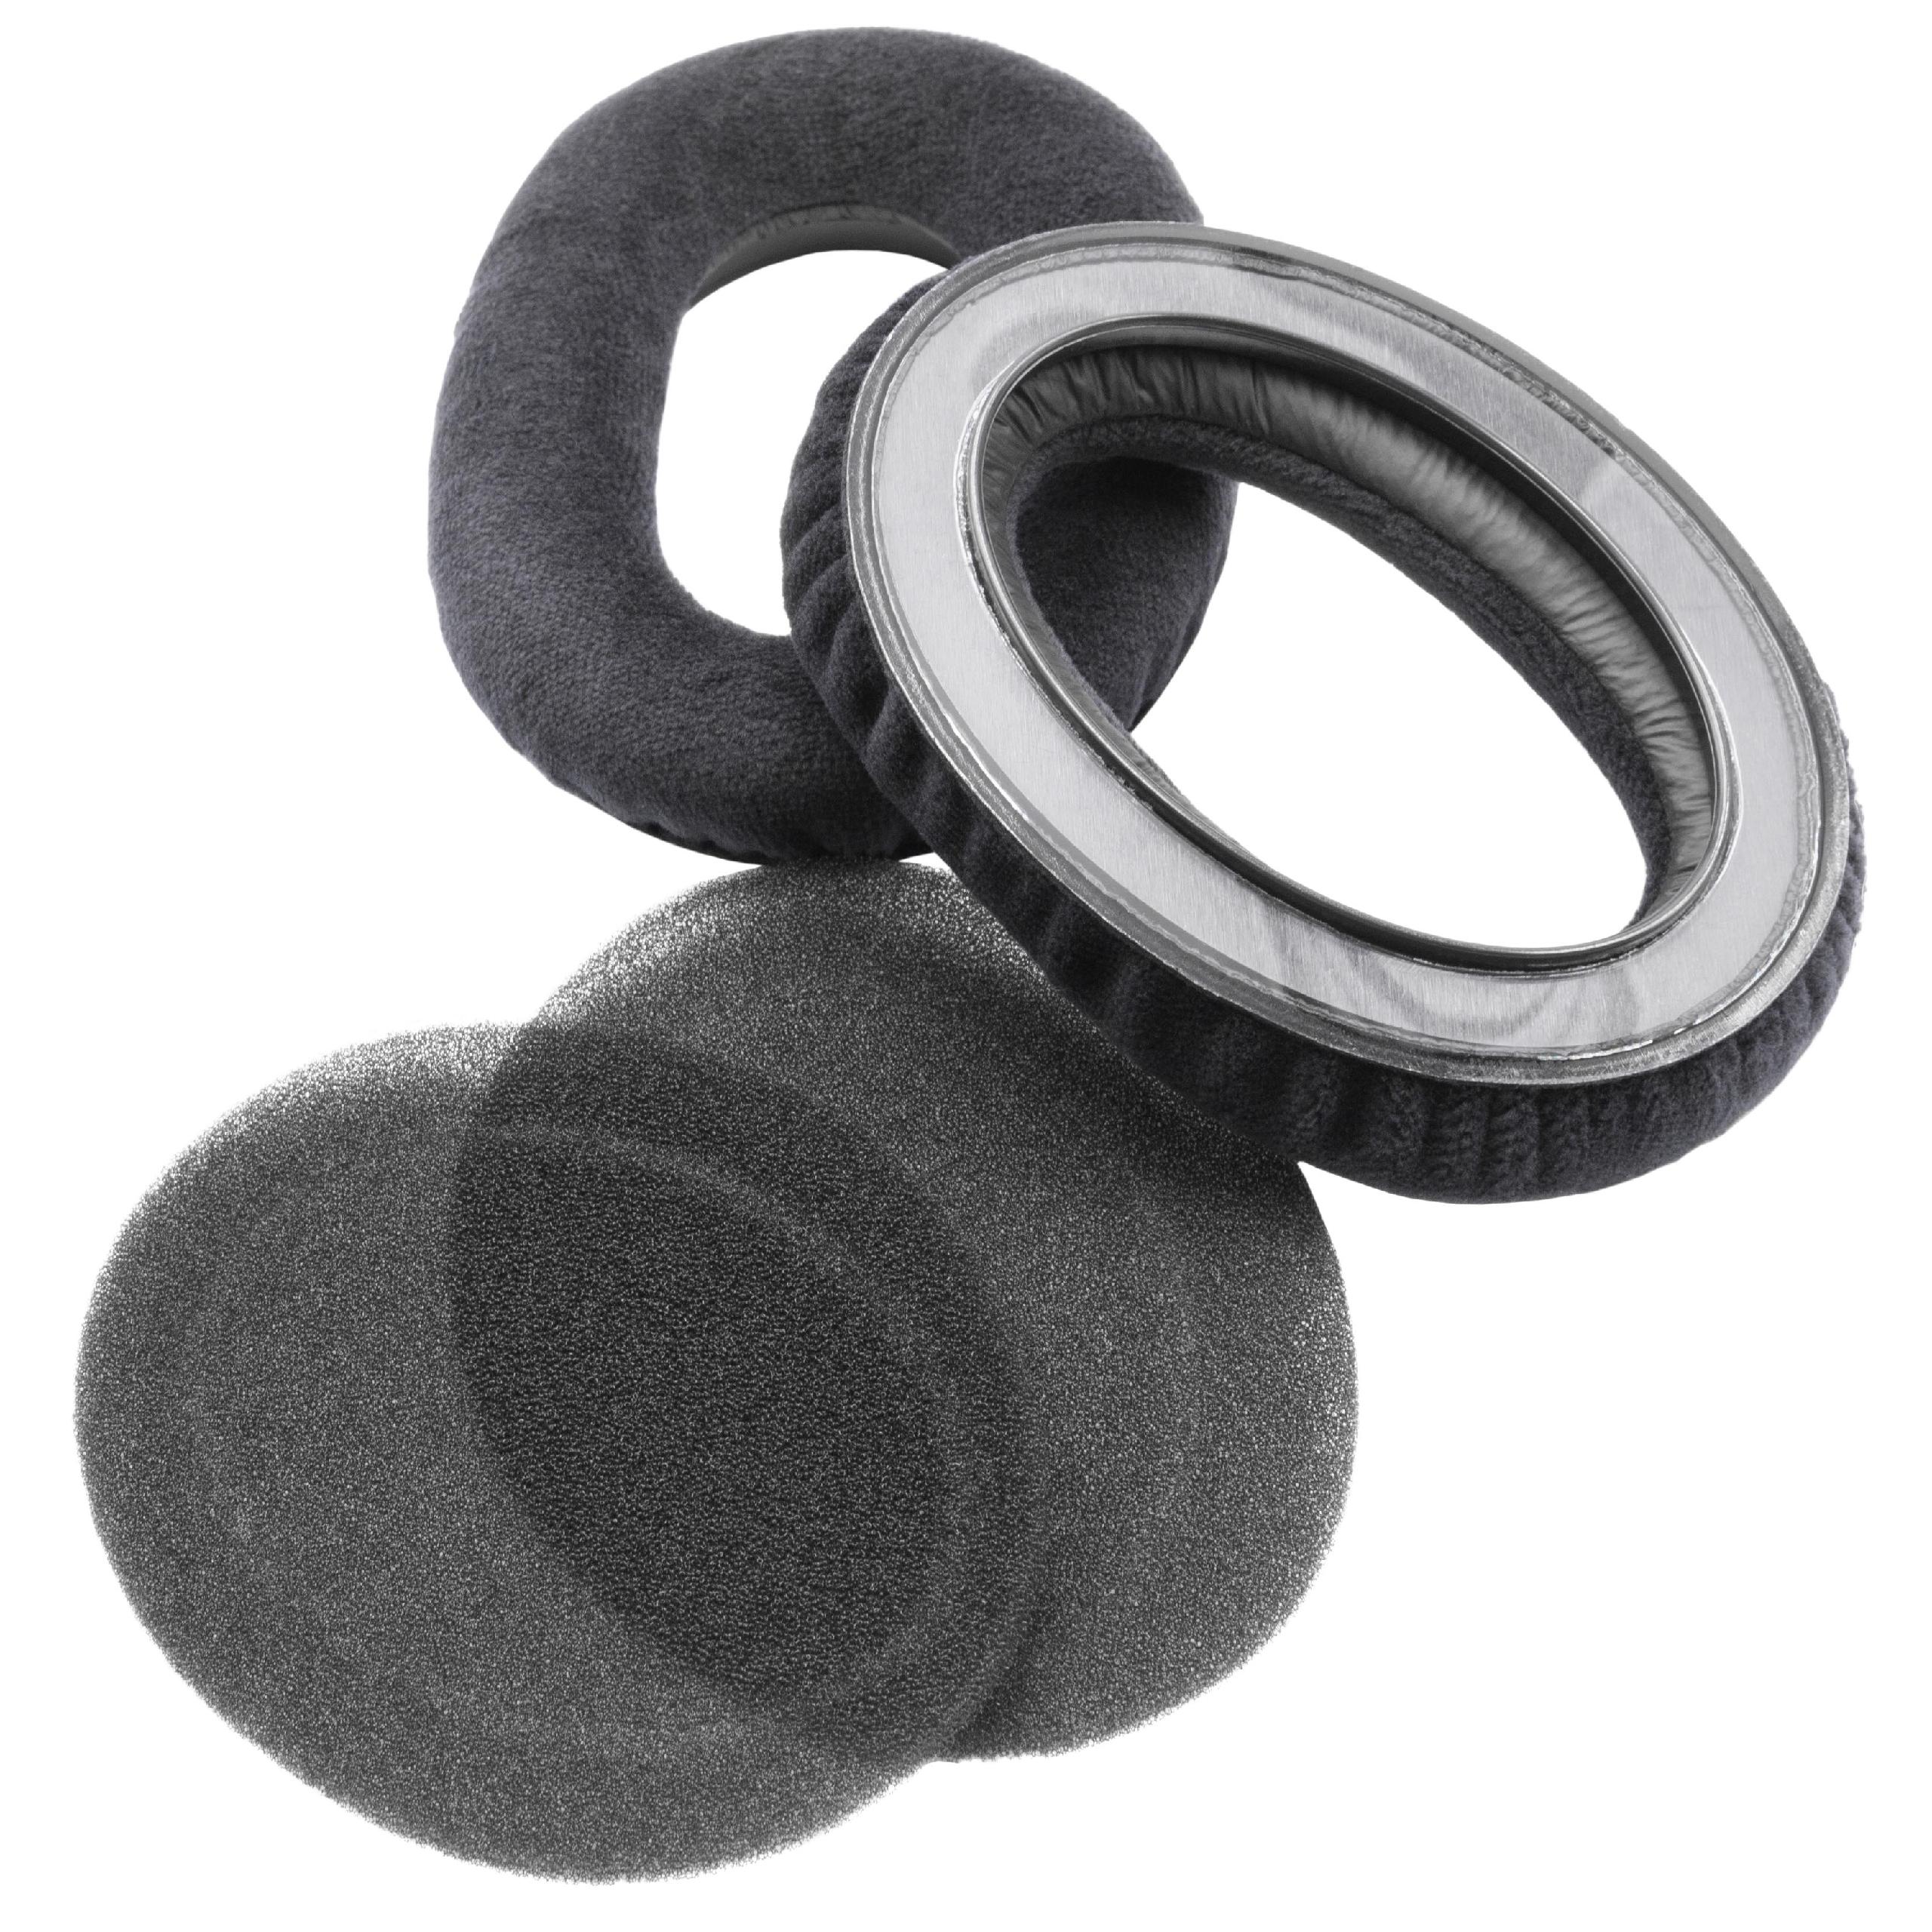 Ohrenpolster passend für Sennheiser HD545 Kopfhörer u.a. - Schaumstoff, 10,1 x 7,6 cm, 19 mm stark, Schwarz